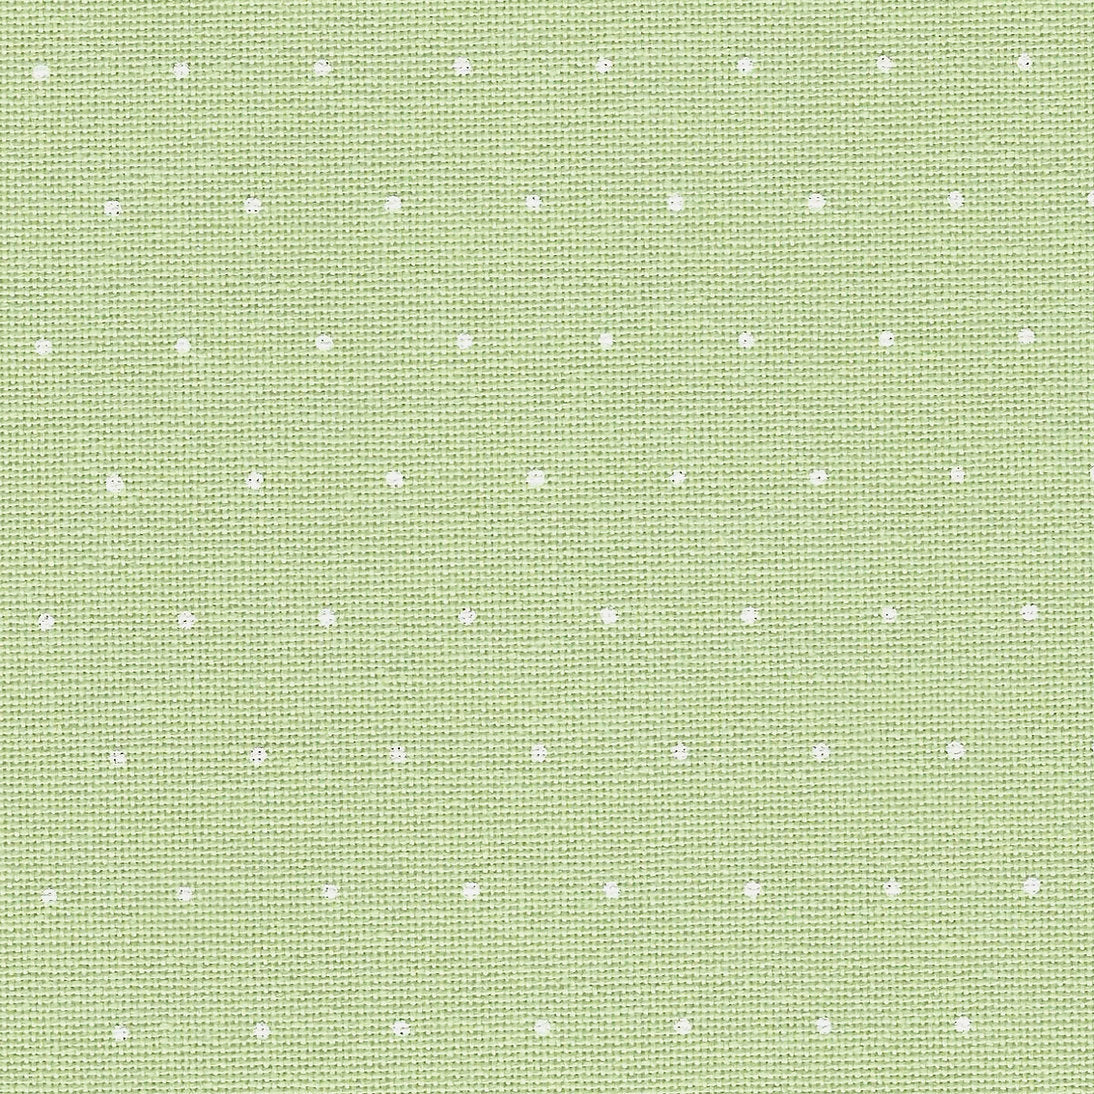 Murano Lugana Fabric Mini Dots Green / White 32 ct. Zweigart 3984/6349